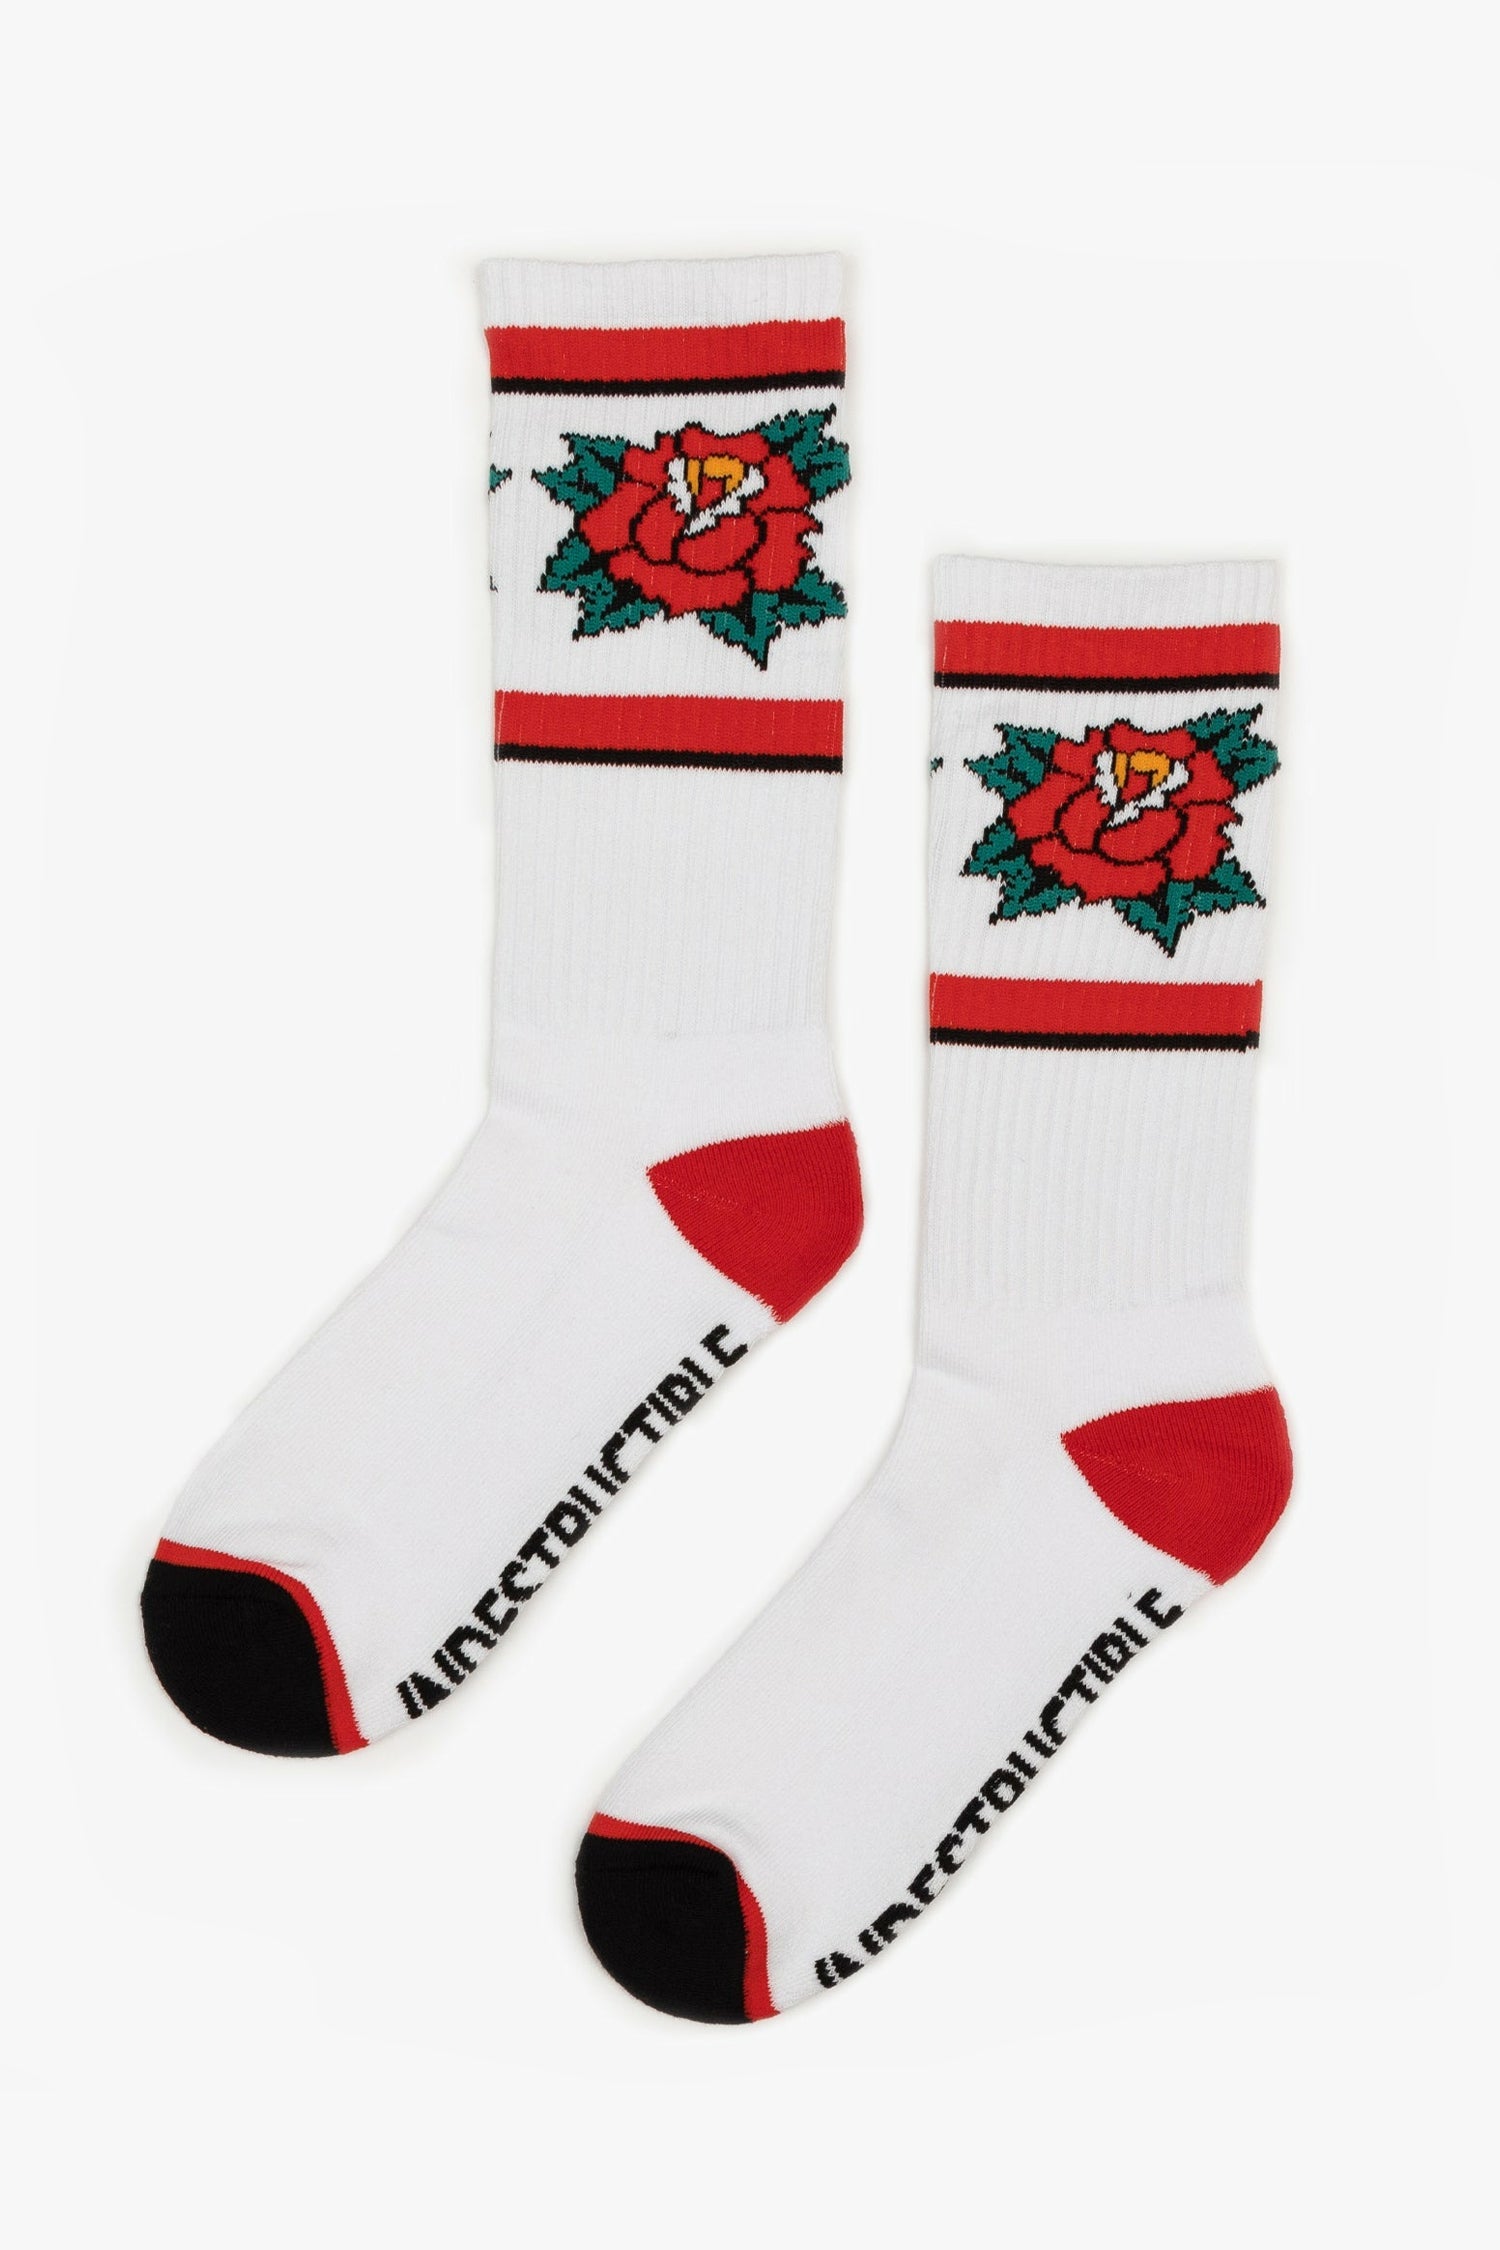 Red Rose Socks - Indestructible MFG